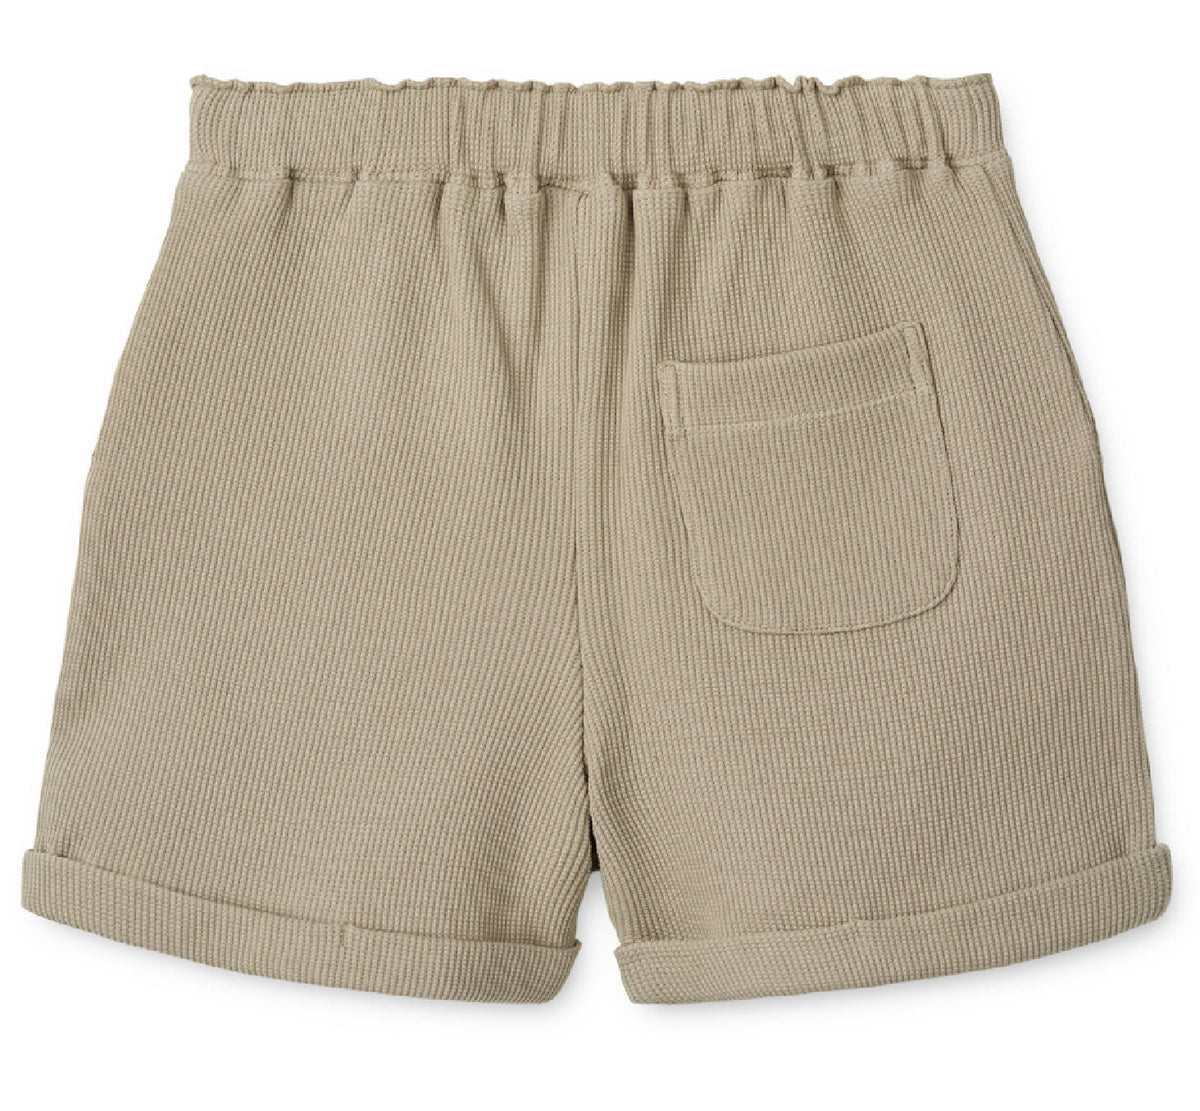 Shorts "Cay / Mist"